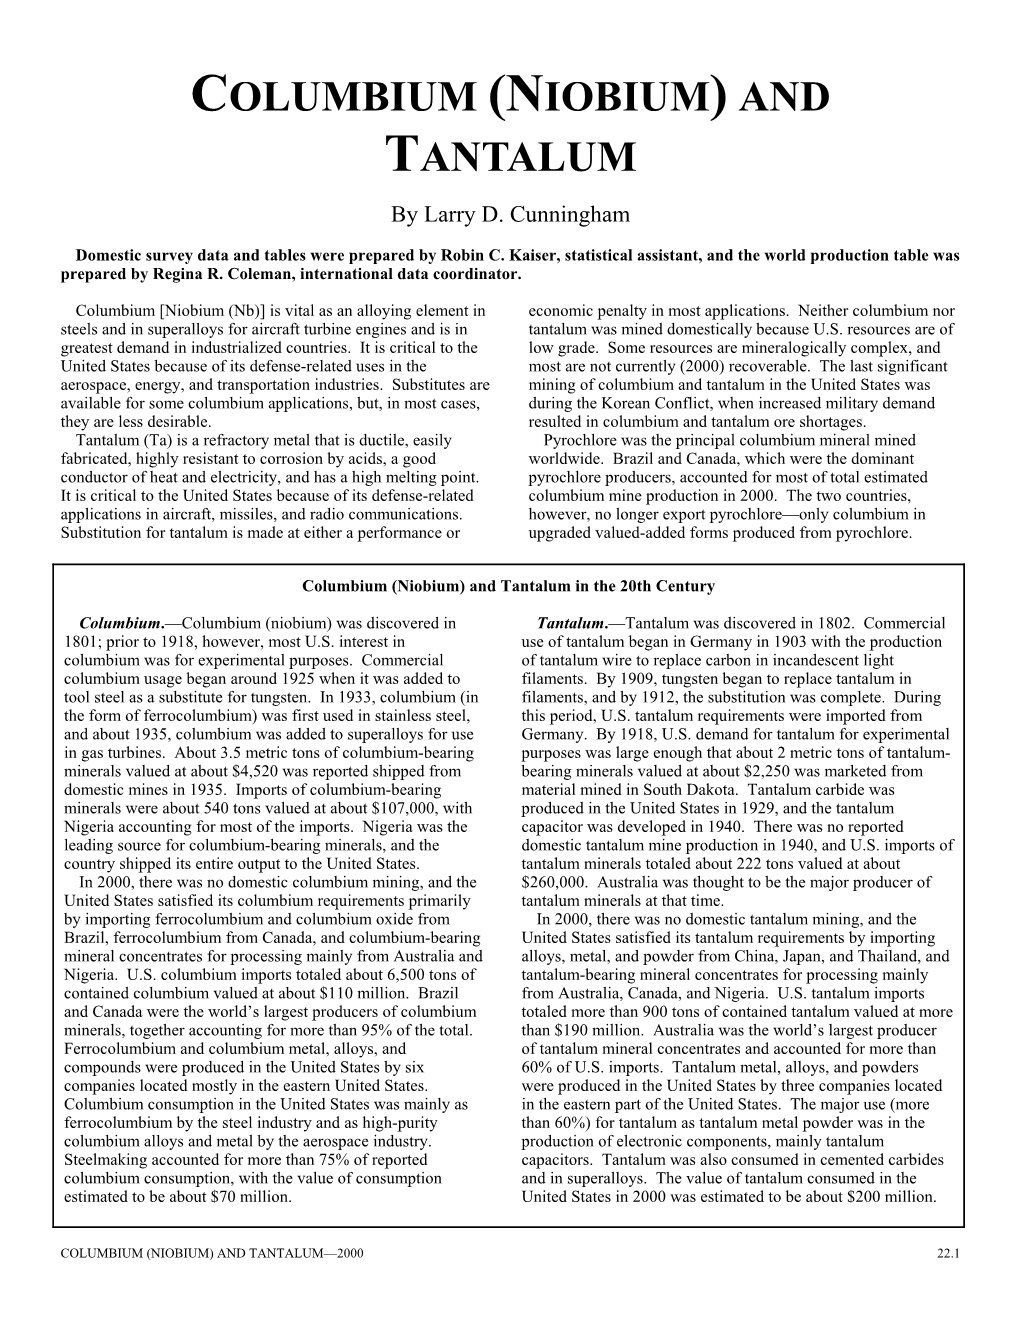 Columbium (Niubium) and Tantalum